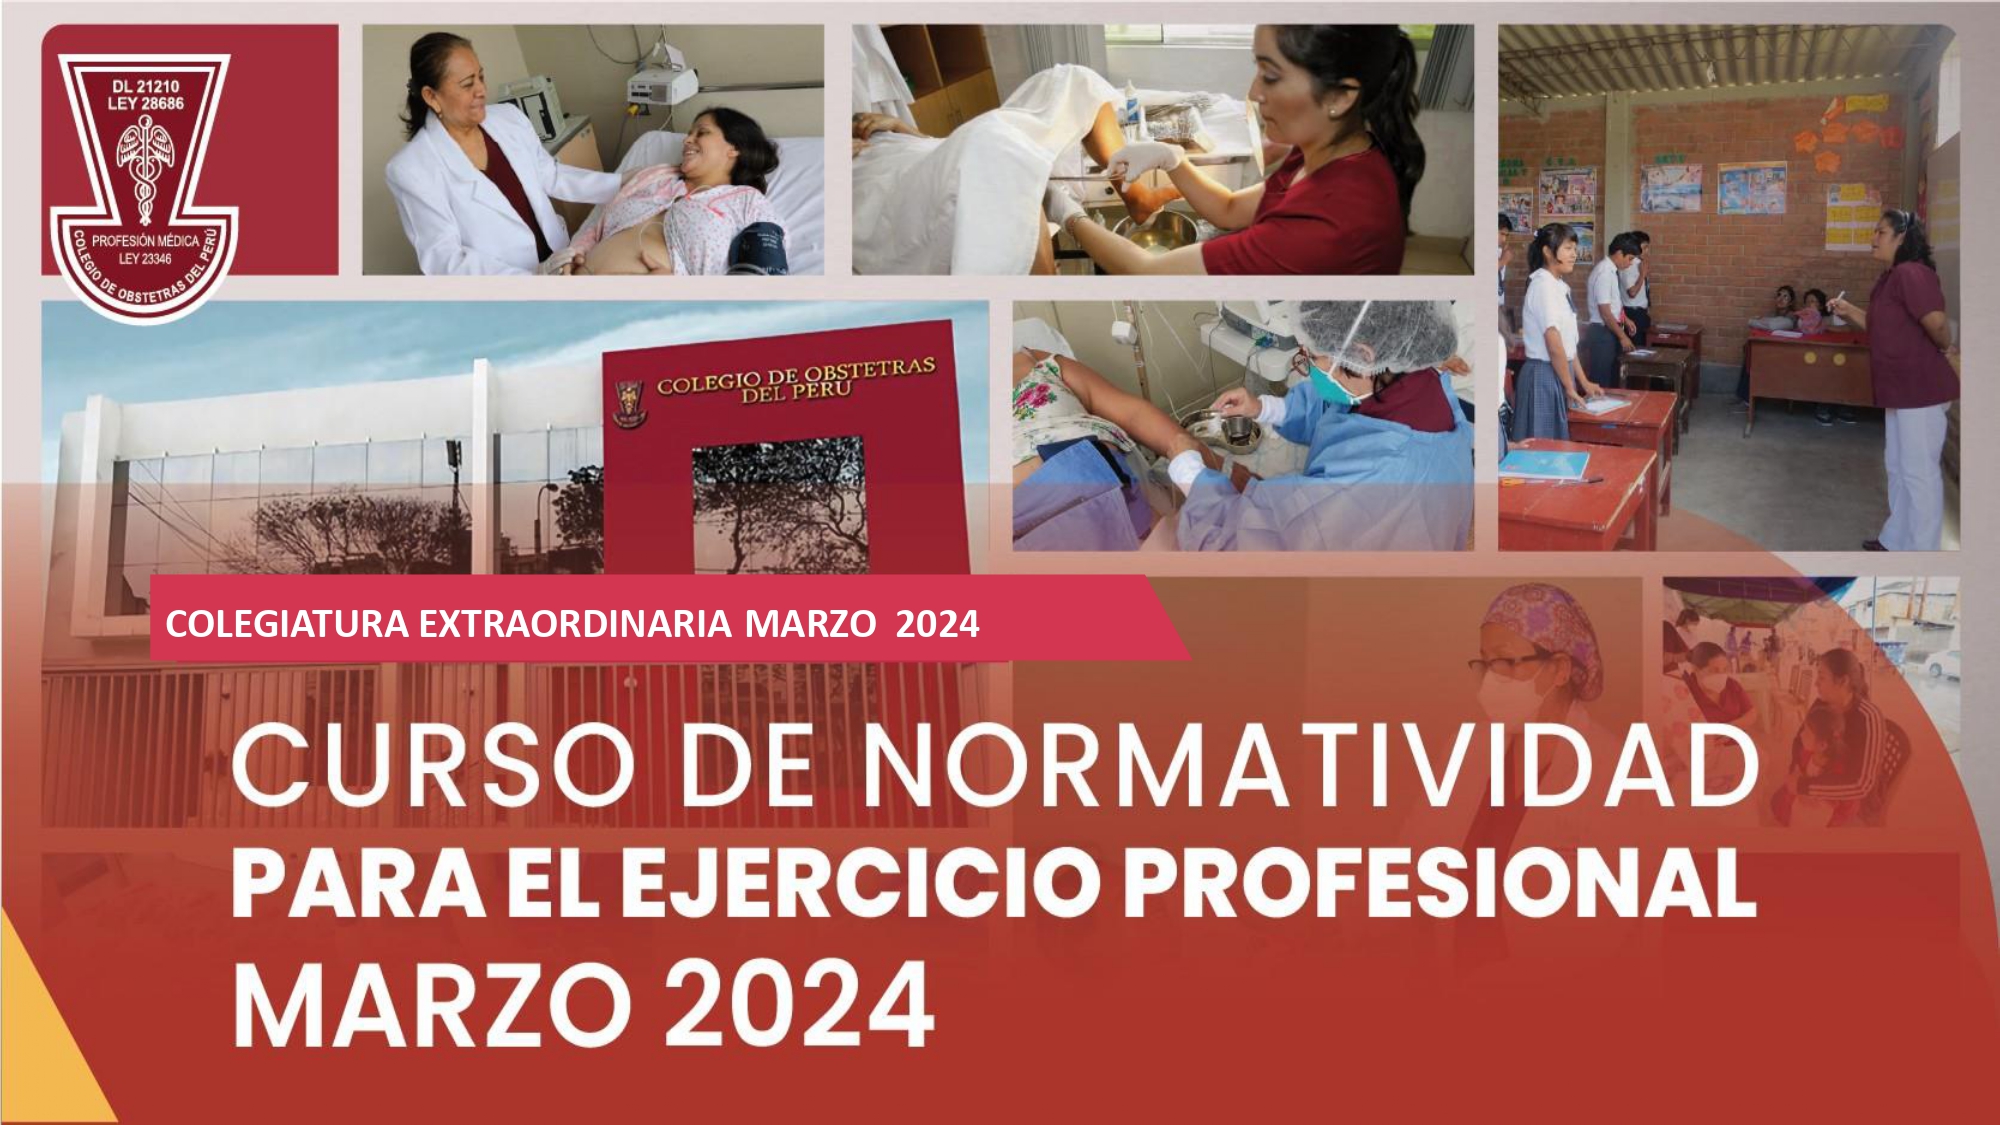 CURSO DE NORMATIVIDAD PARA EL EJERCICIO PROFESIONAL- PROCESO EXTRAORDINARIO MARZO 2024